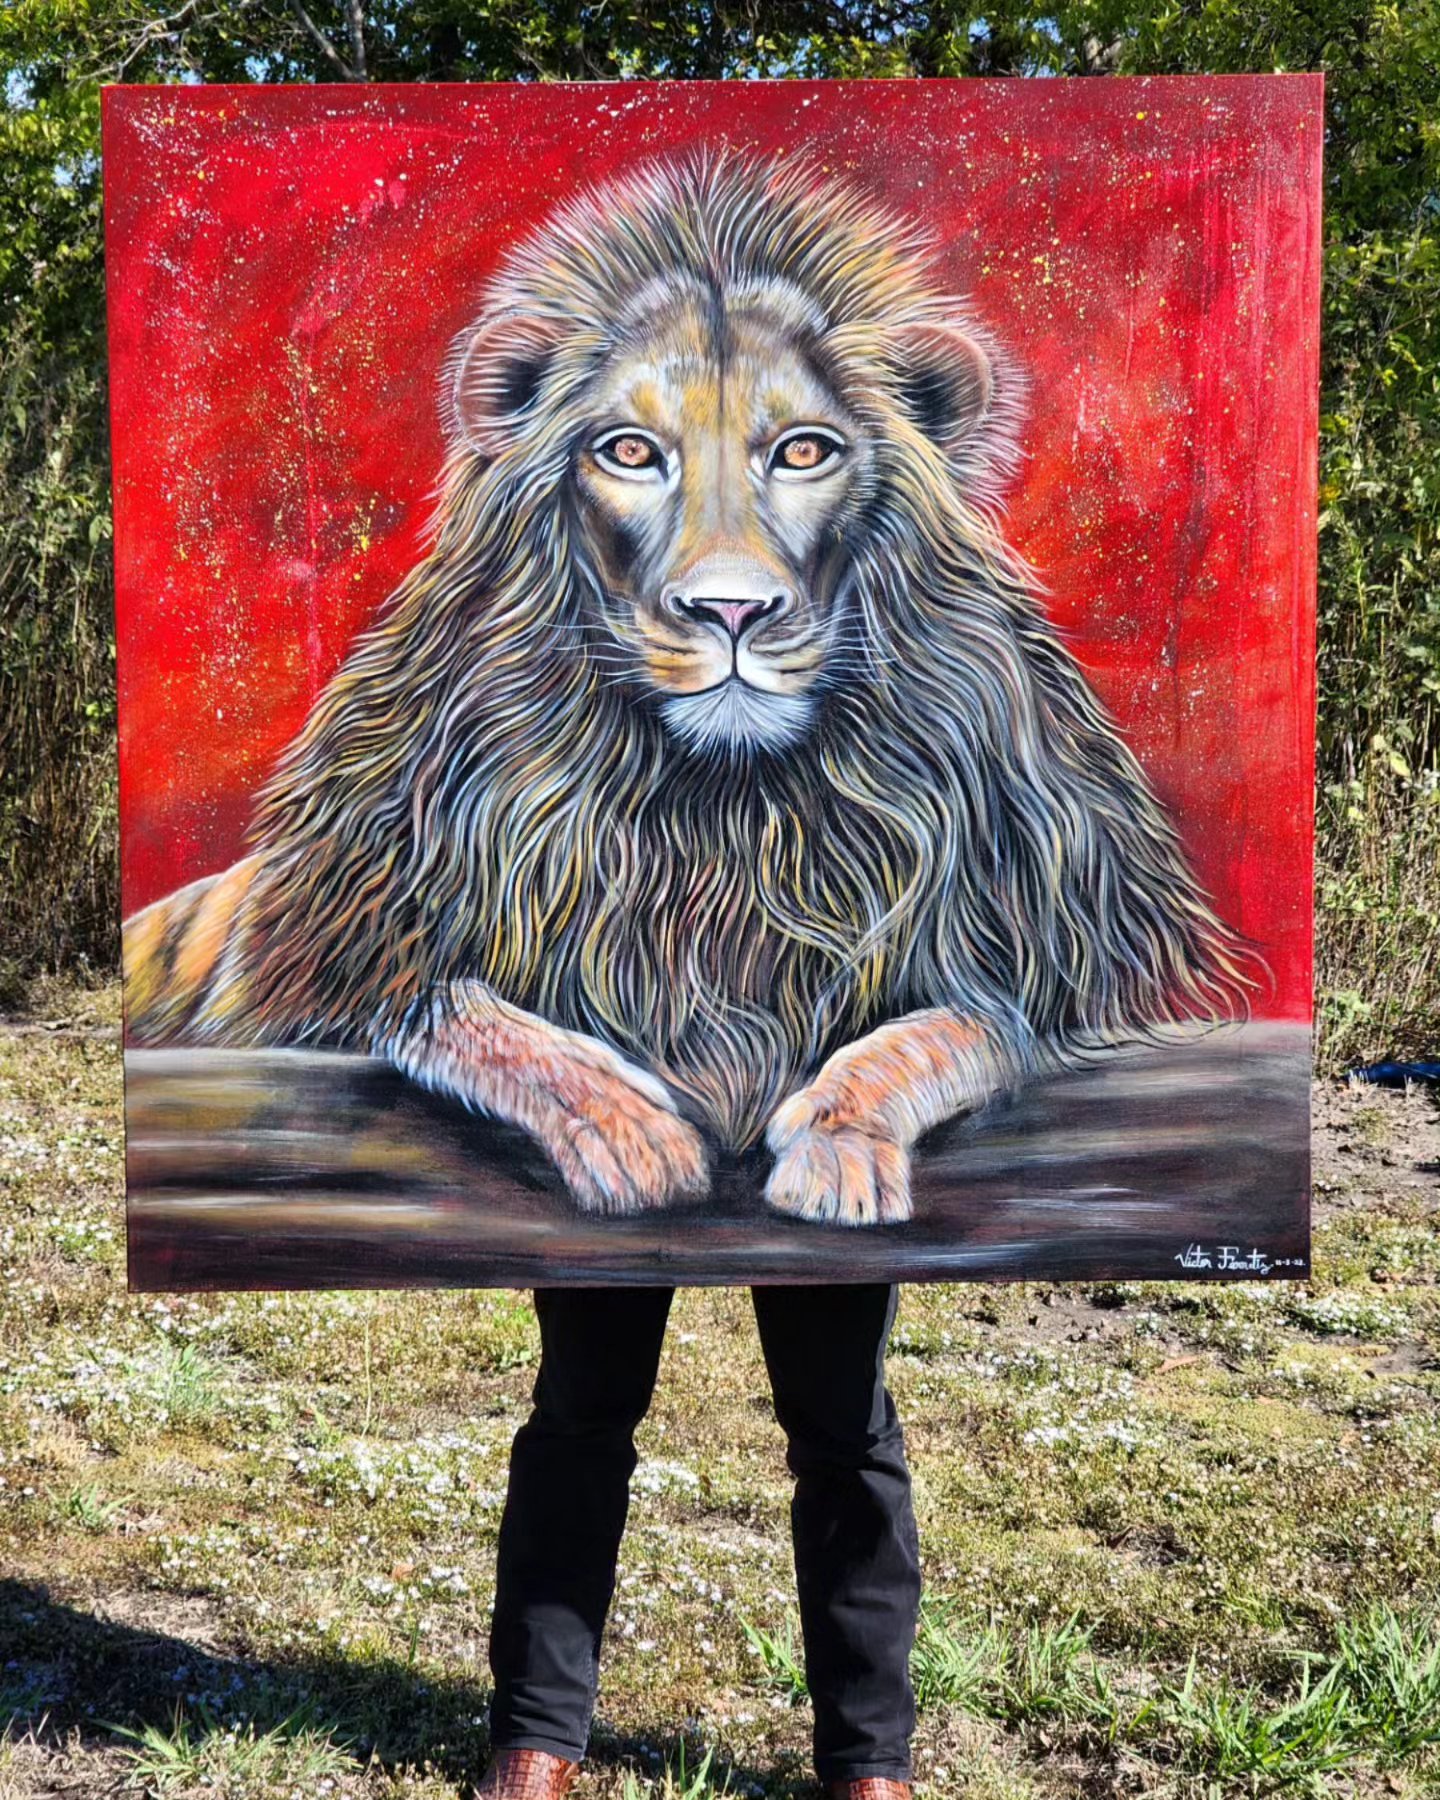 Aquí les comparto éstas fotografías de la nueva obra de arte que he titulado "Powerful" (Poderoso), lo cual representa la presencia de un león fuerte y poderoso, y con un gran nivel de majestuosidad y elegancia y respeto. La obra de arte está pintada con acrílicos sobre lienzo de 48"x48" pulgadas.